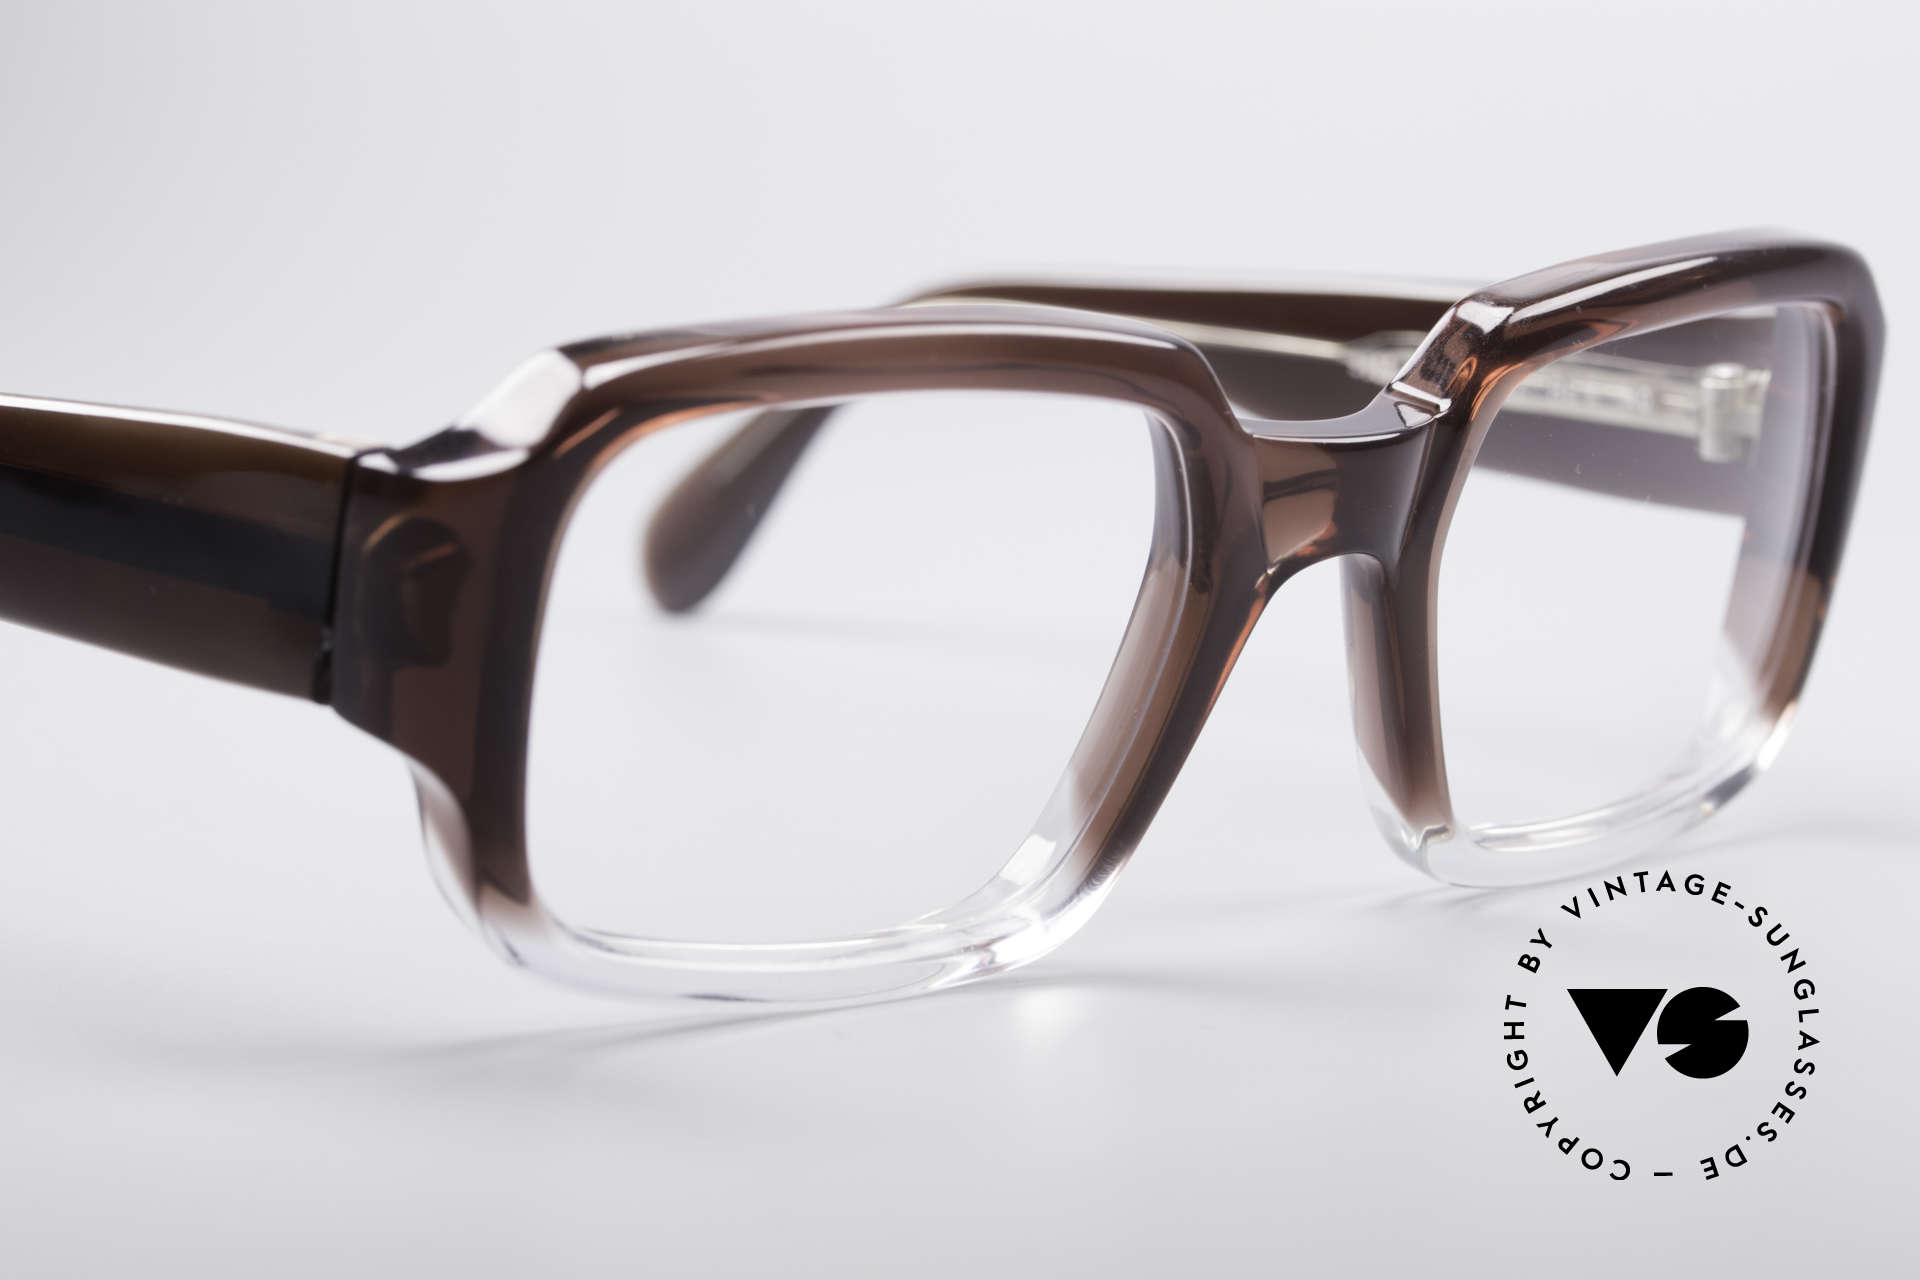 Metzler 4005 Old Original Marwitz Glasses, same craftsmanship, same materials, same production, Made for Men